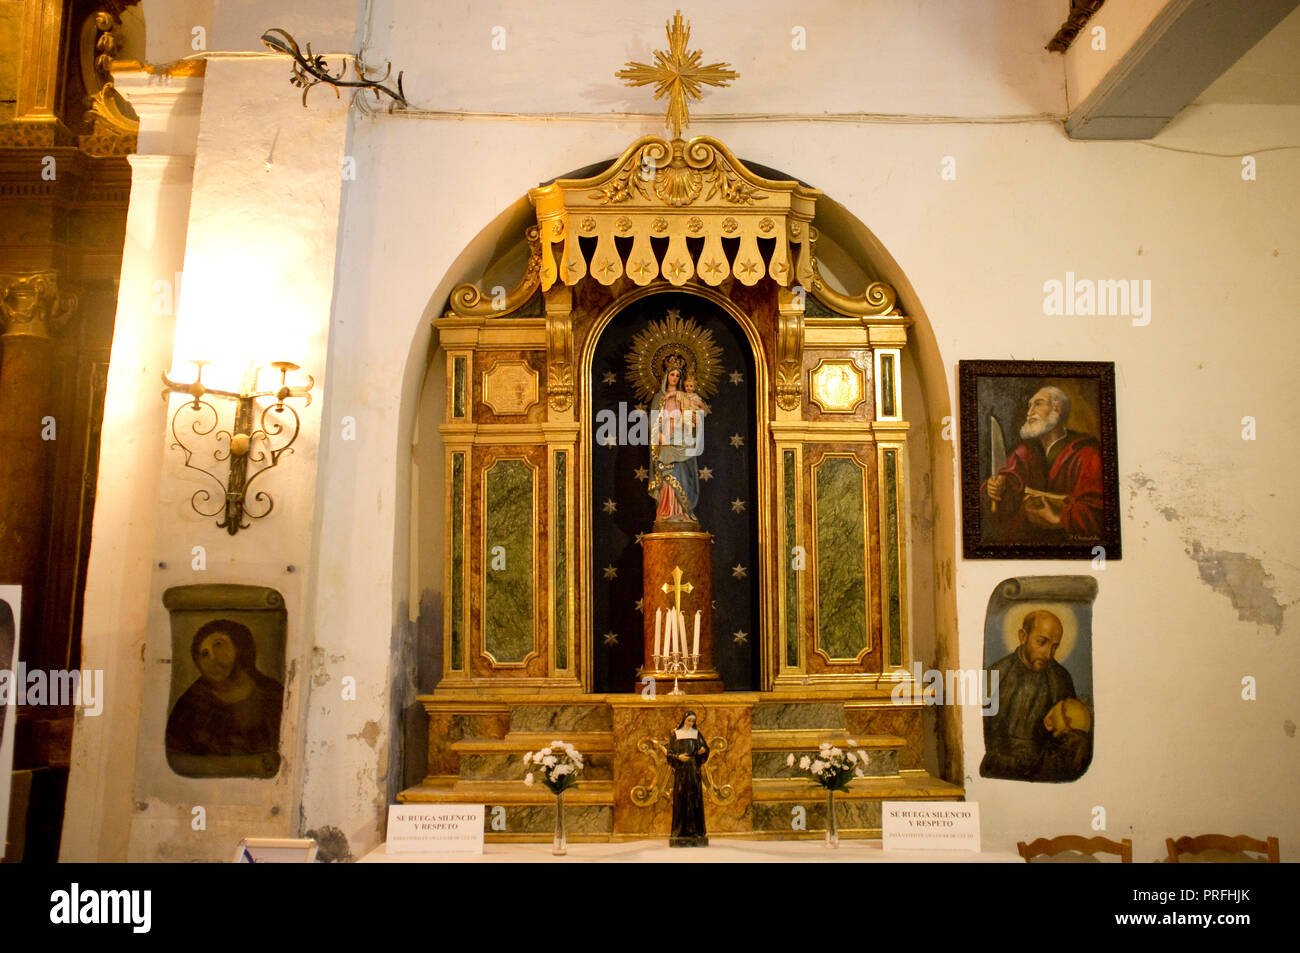 ECCE HOMO, sanctuaire de la miséricorde dans l'église BORJA, Aragon, Espagne, à l'origine peint par Elias Garcia Martinez et restauré par Cecilia Gimenez Zueco. Banque D'Images